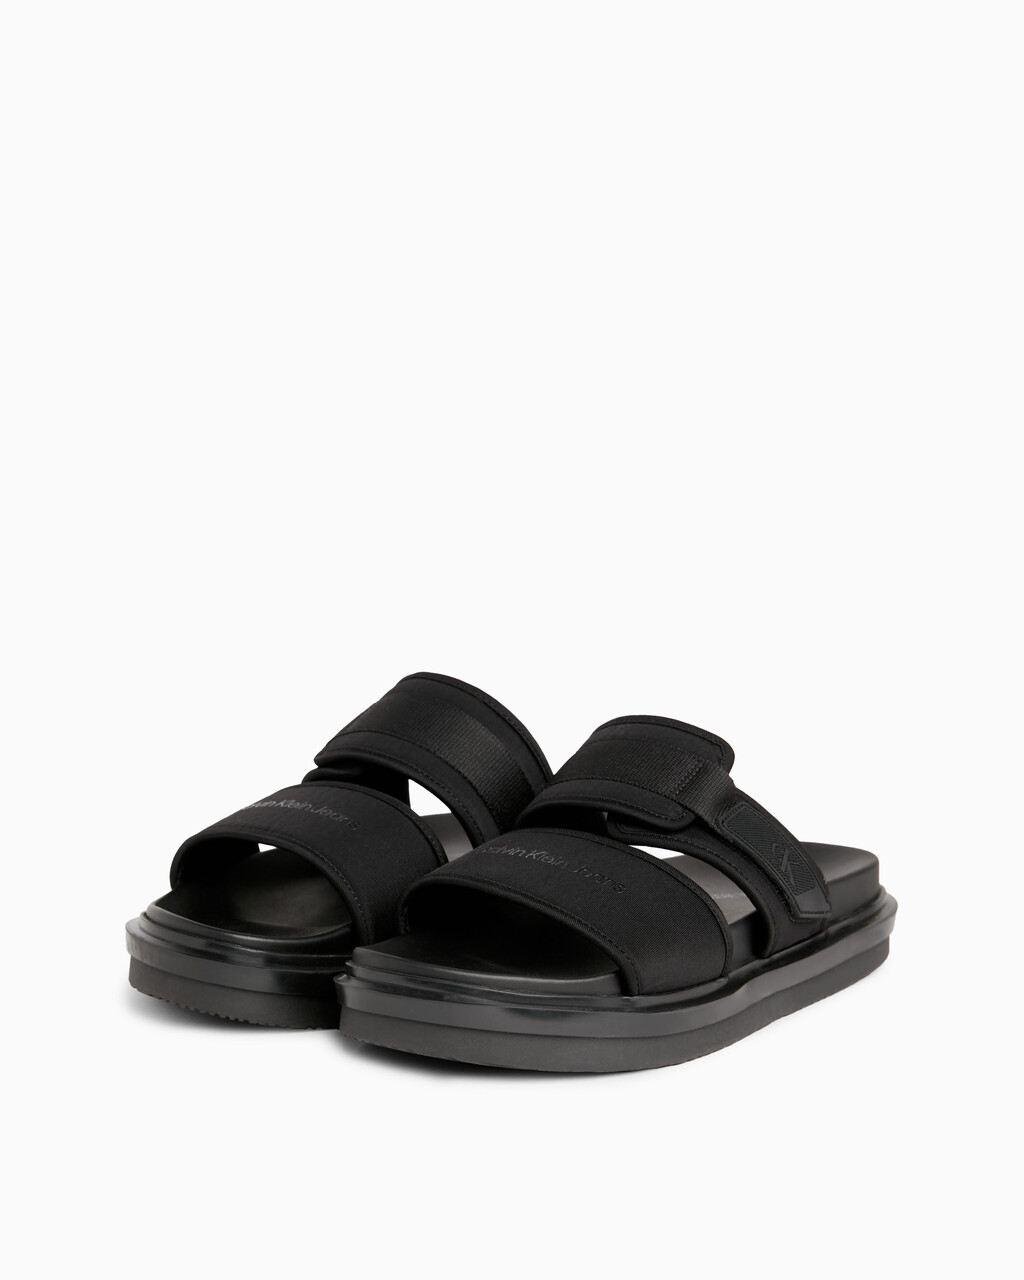 Sandals, TRIPLE BLACK, hi-res